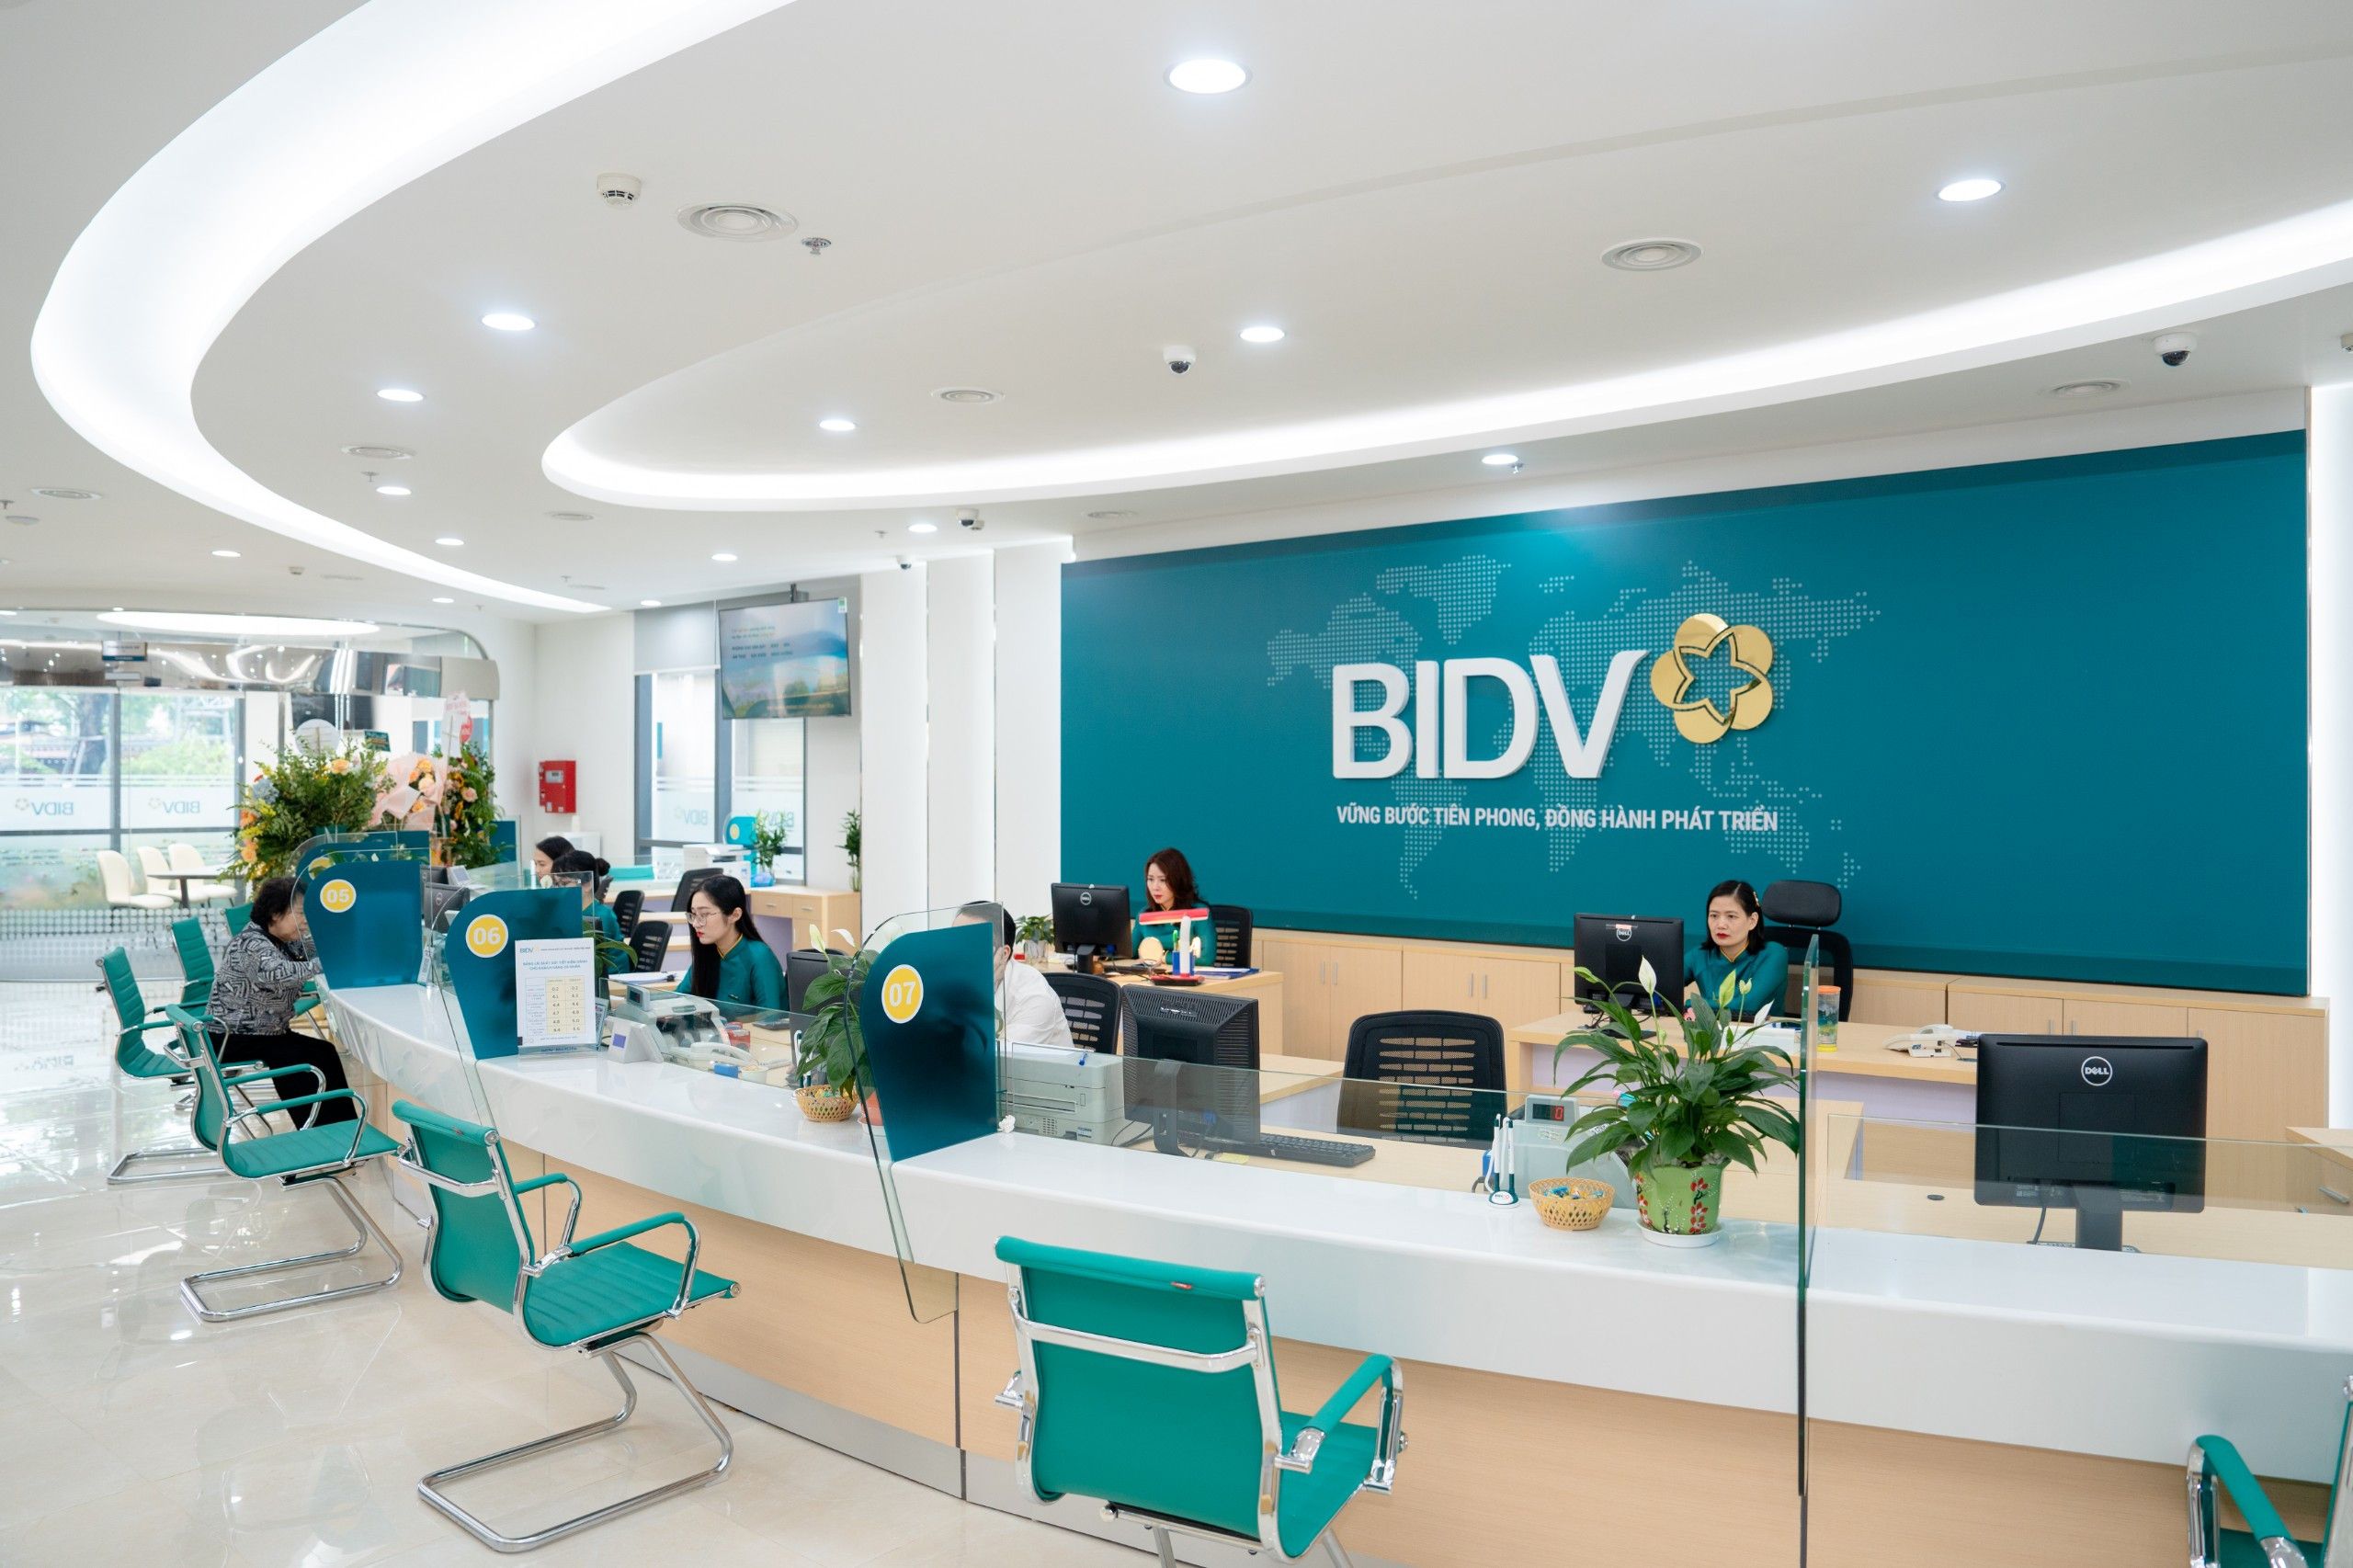 BIDV đấu giá khoản nợ 121 tỷ đồng của Công ty Khai thác Chế biến đá Tây Nguyên